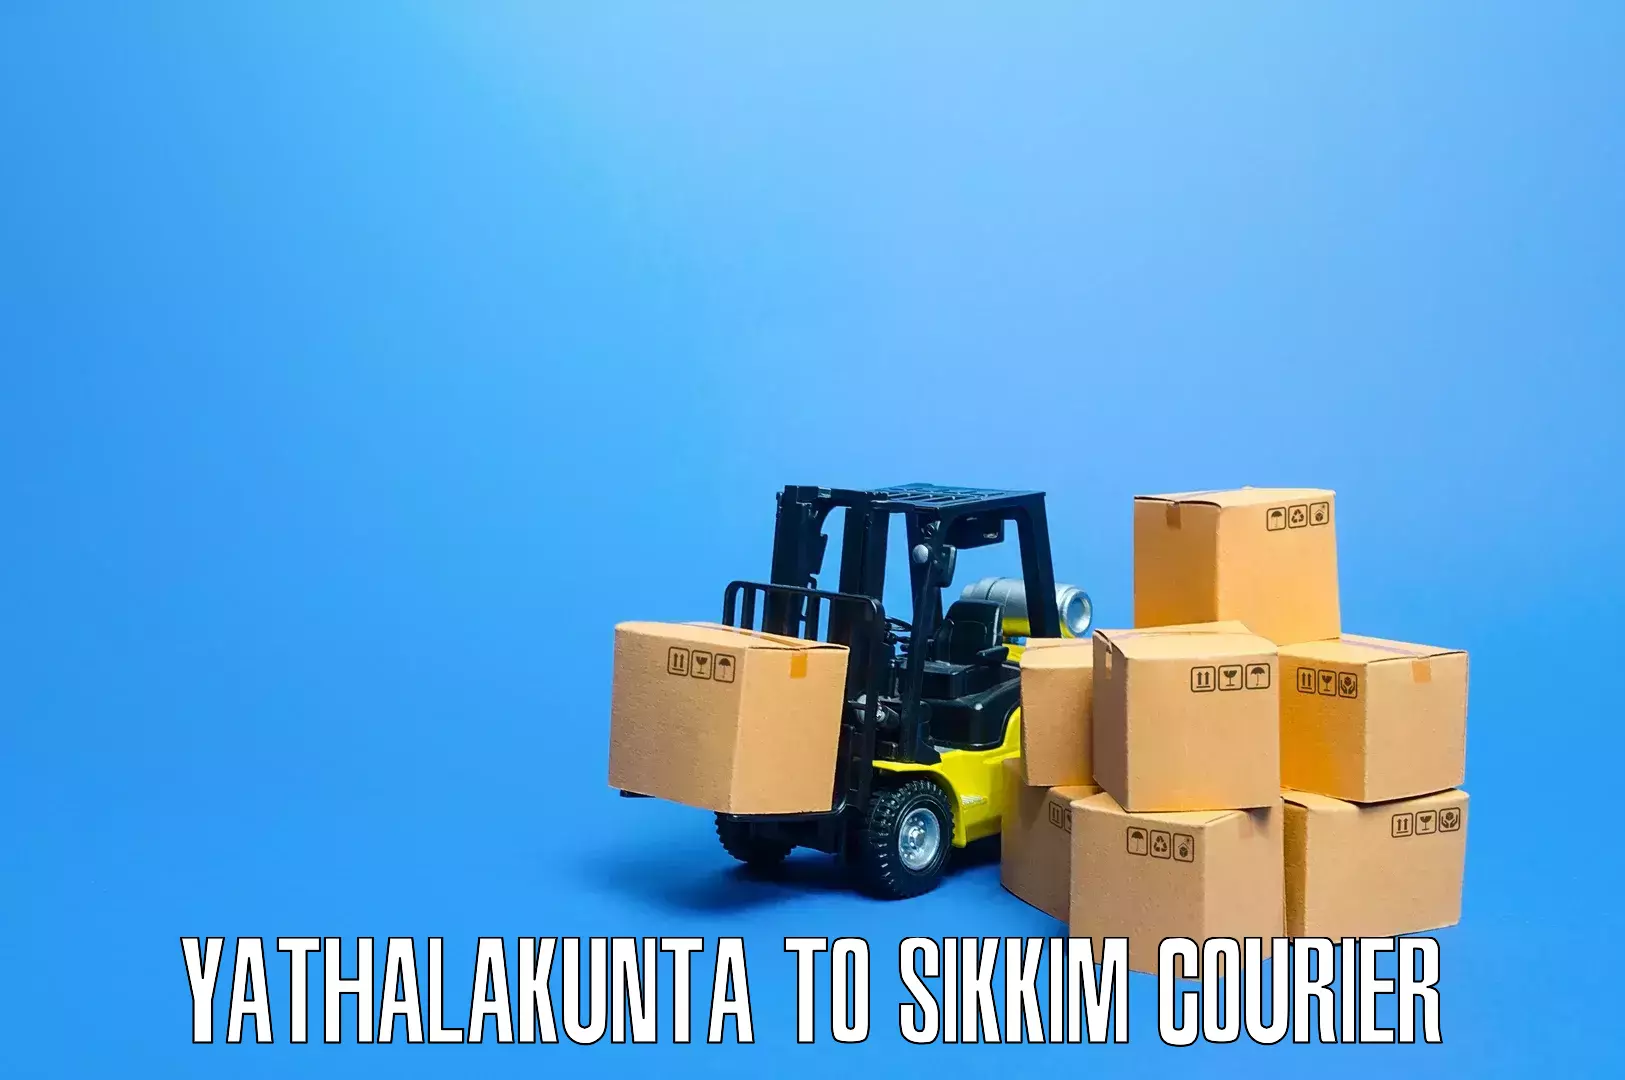 Nationwide furniture transport Yathalakunta to Pelling